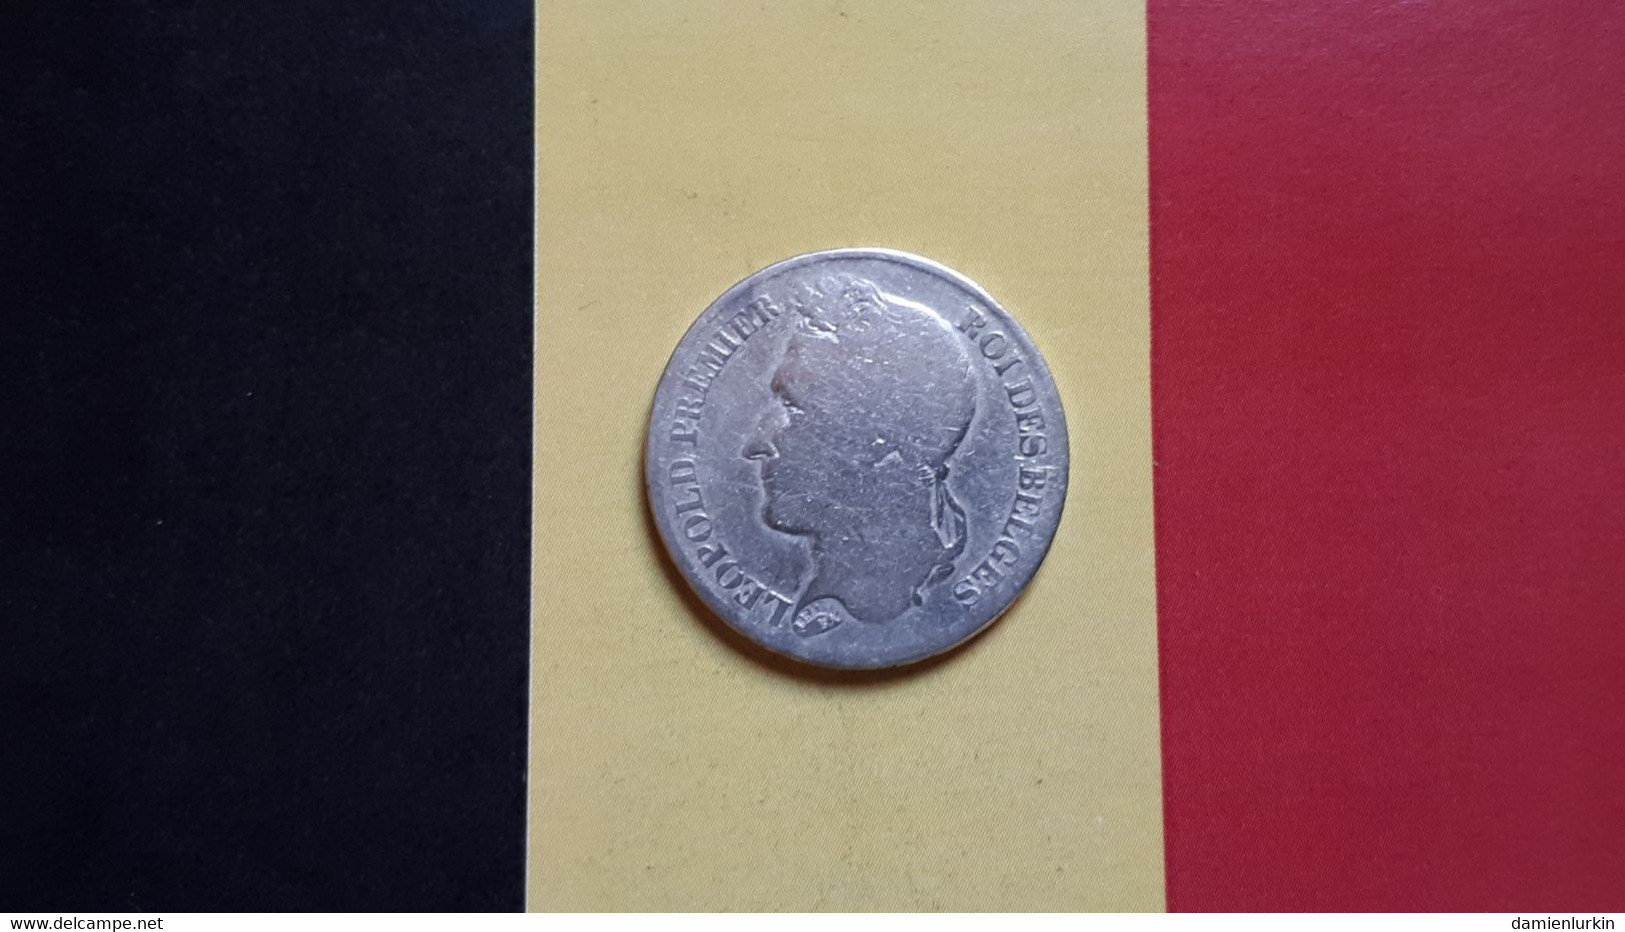 BELGIQUE LEOPOLD IER 2 FRANCS 1843 POSITION B ARGENT DOUBLE DATE !! - 2 Francs